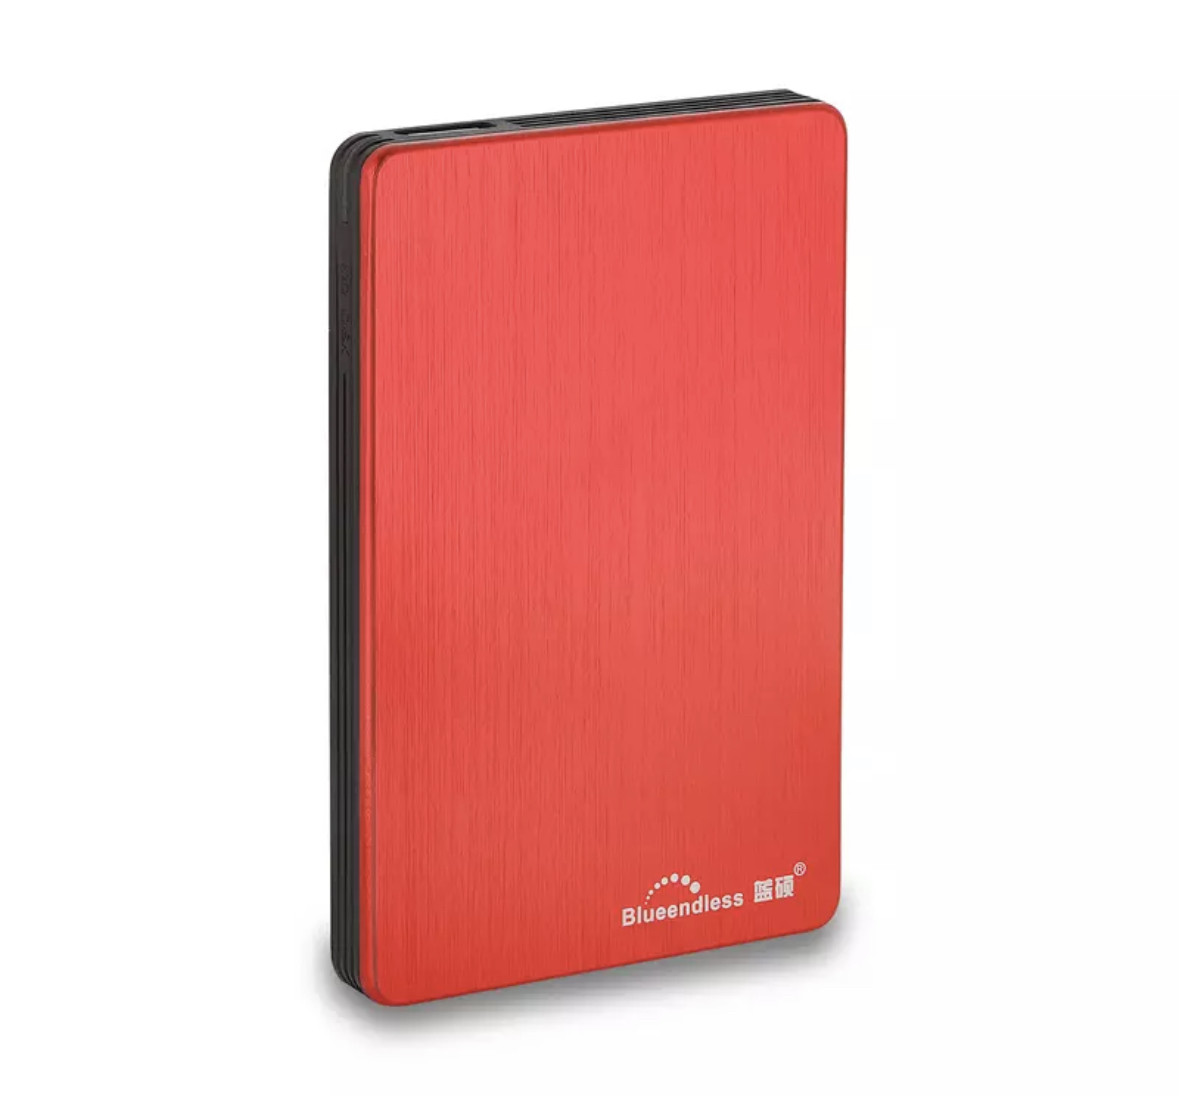 Зовнішній жорсткий диск Blueendless H6 320Gb Red, фото 1